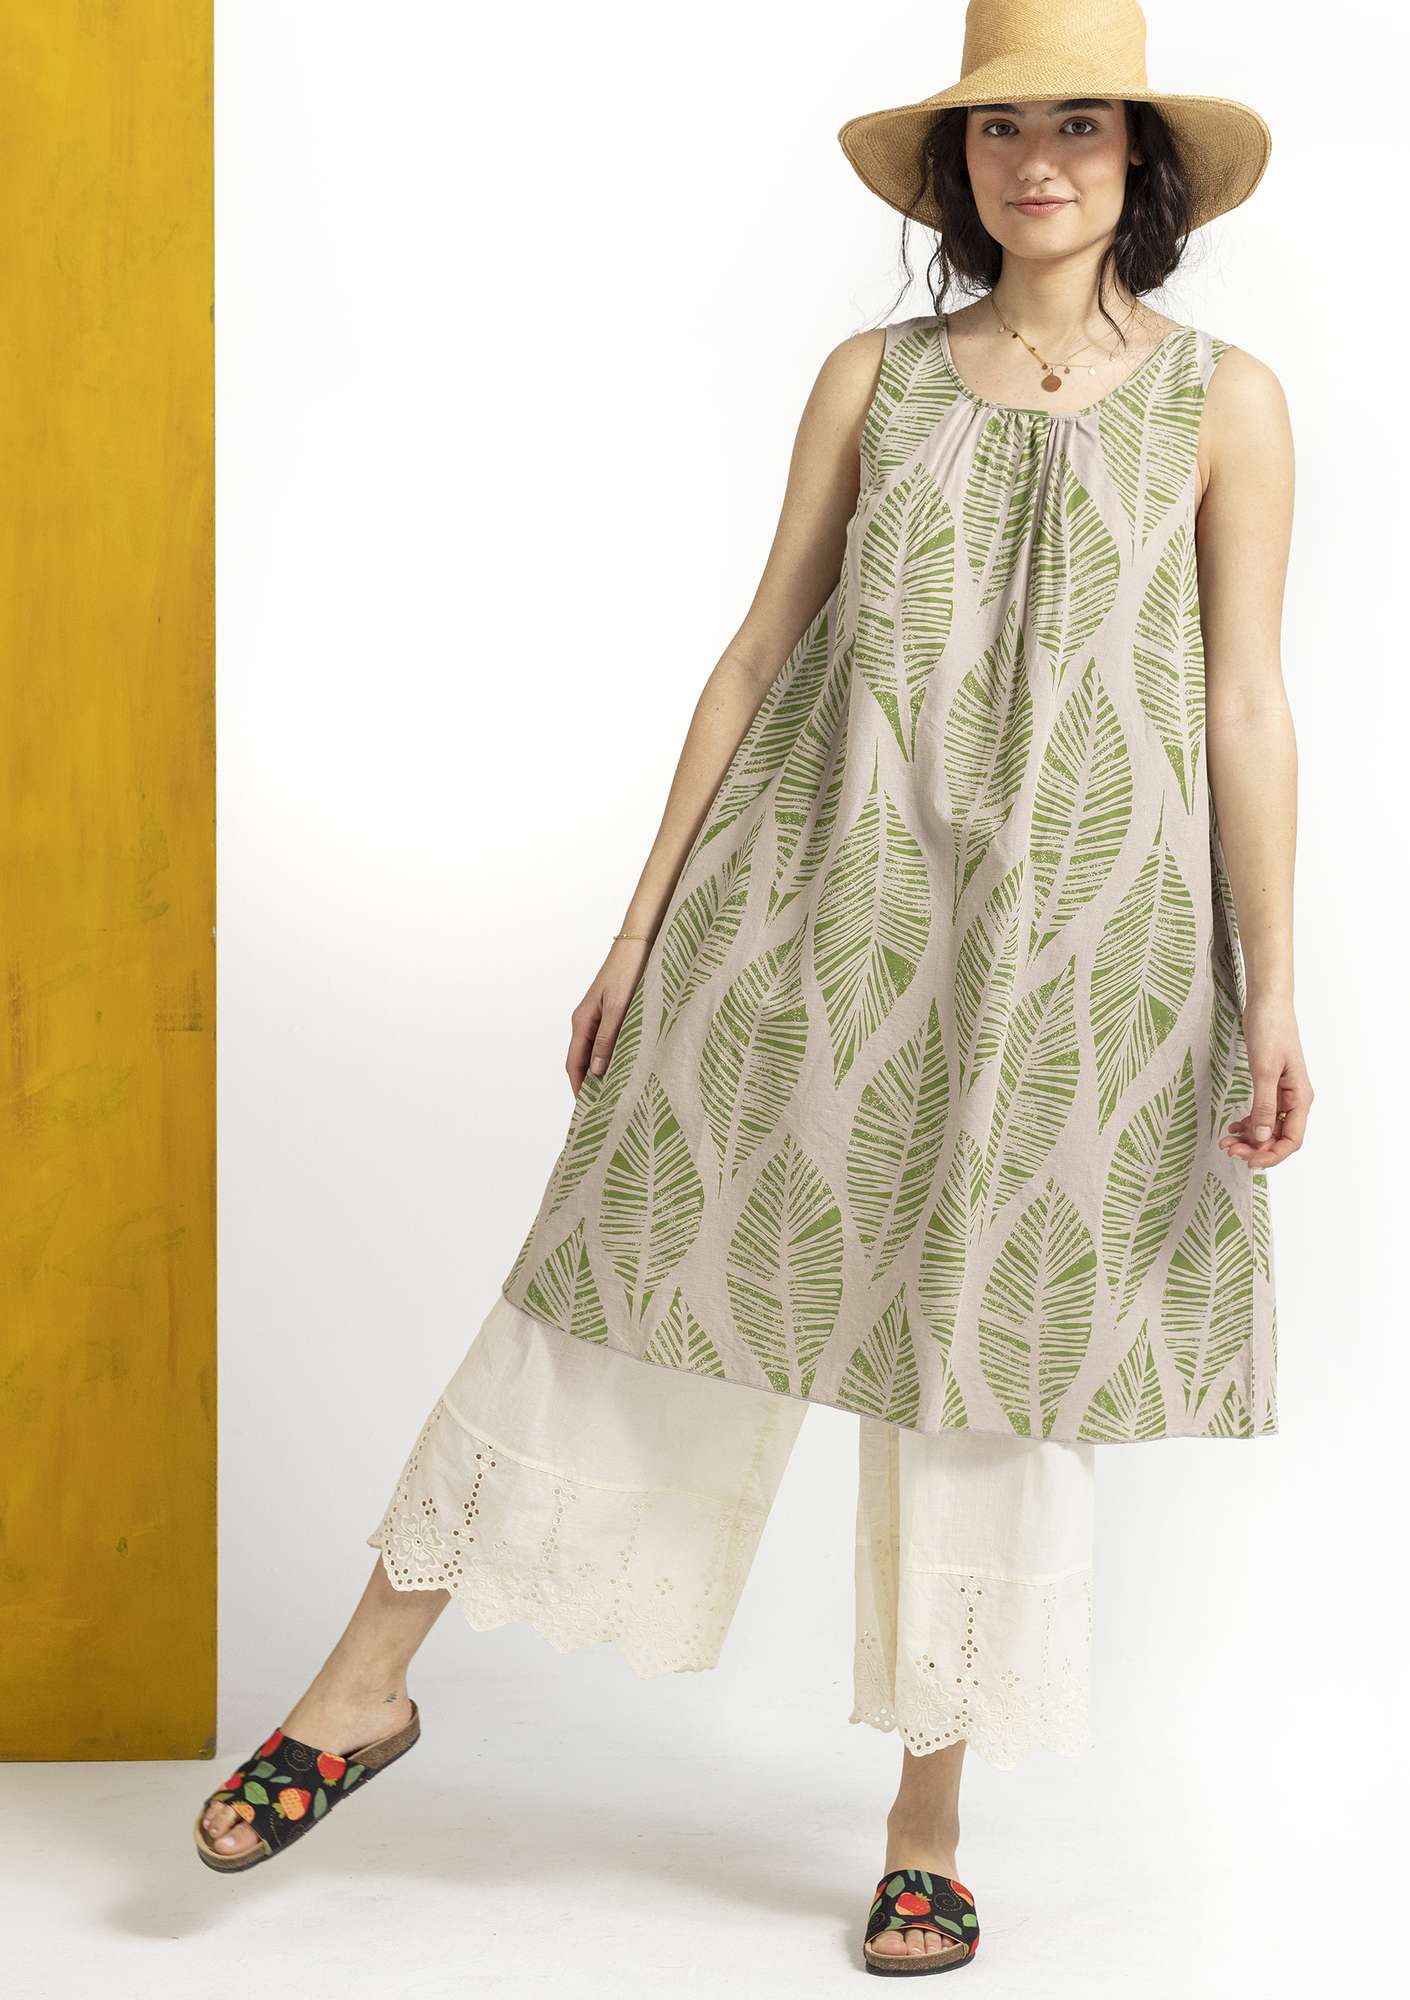 Vevd kjole «Decor» i økologisk bomull/lin naturmelert